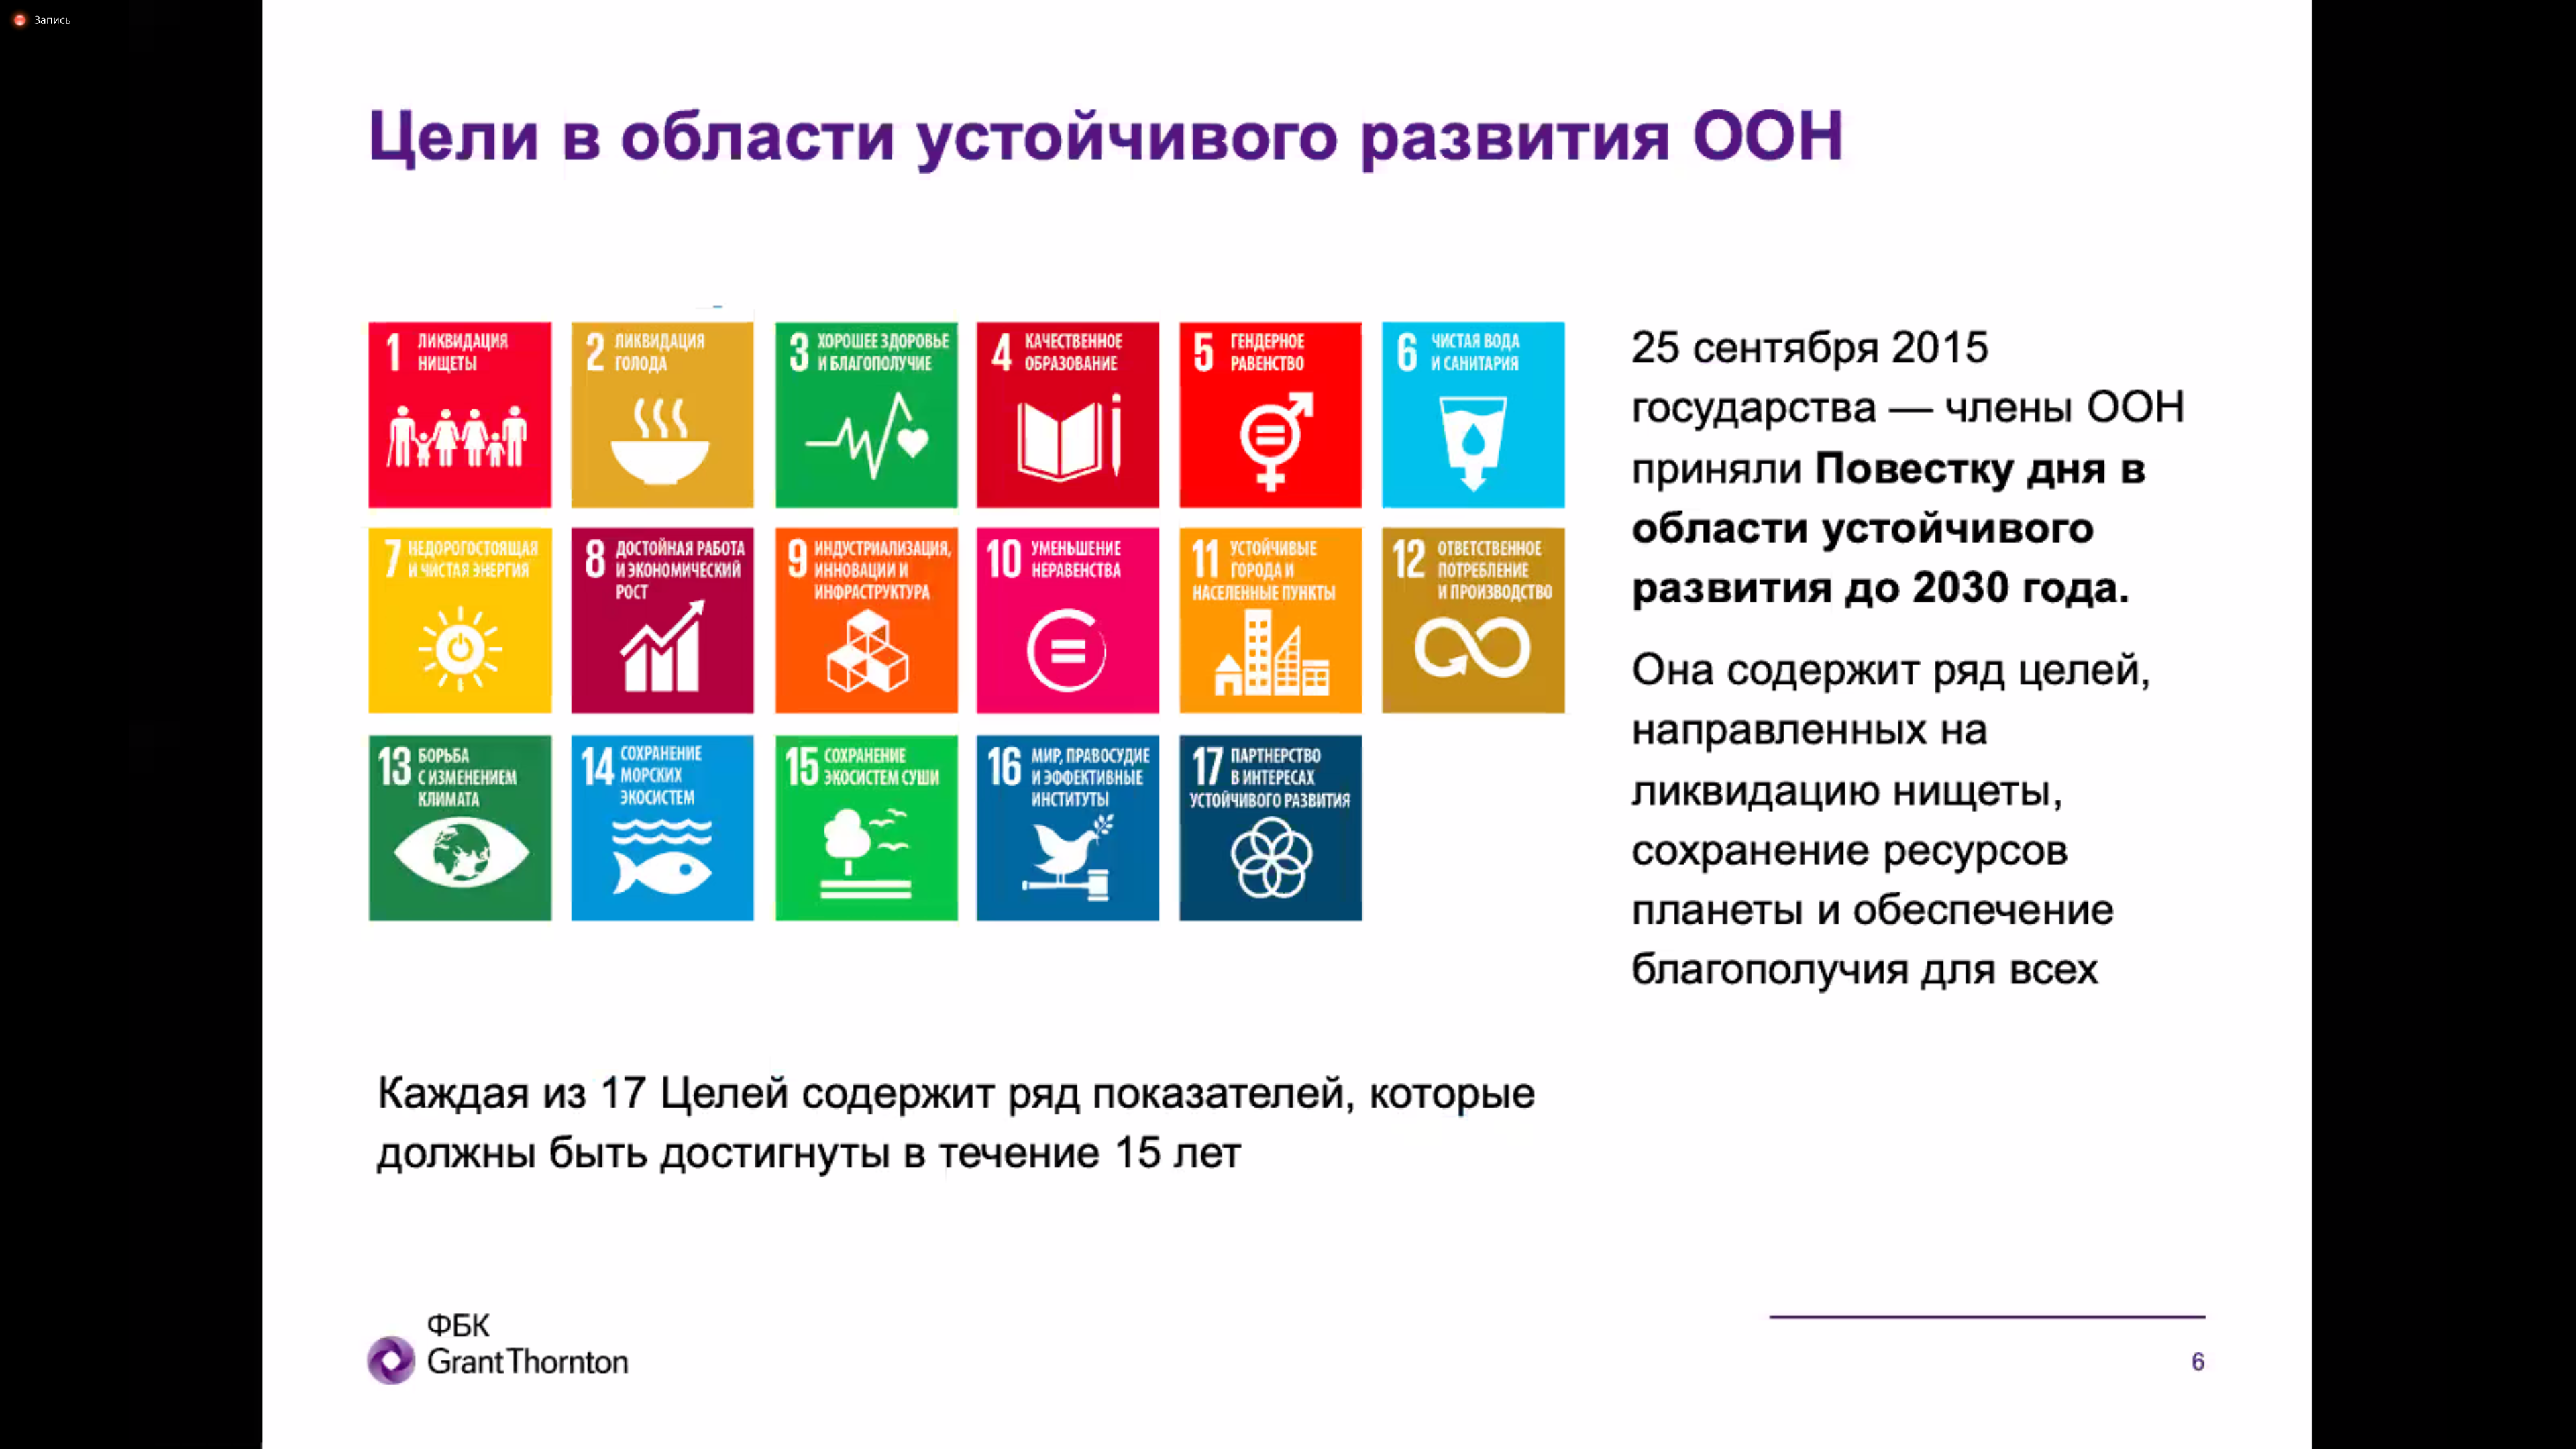 Цели устойчивого развития ООН 2015-2030. Цели устойчивого развития ООН до 2030. Цели развития ООН. 17 Целей устойчивого развития ООН.